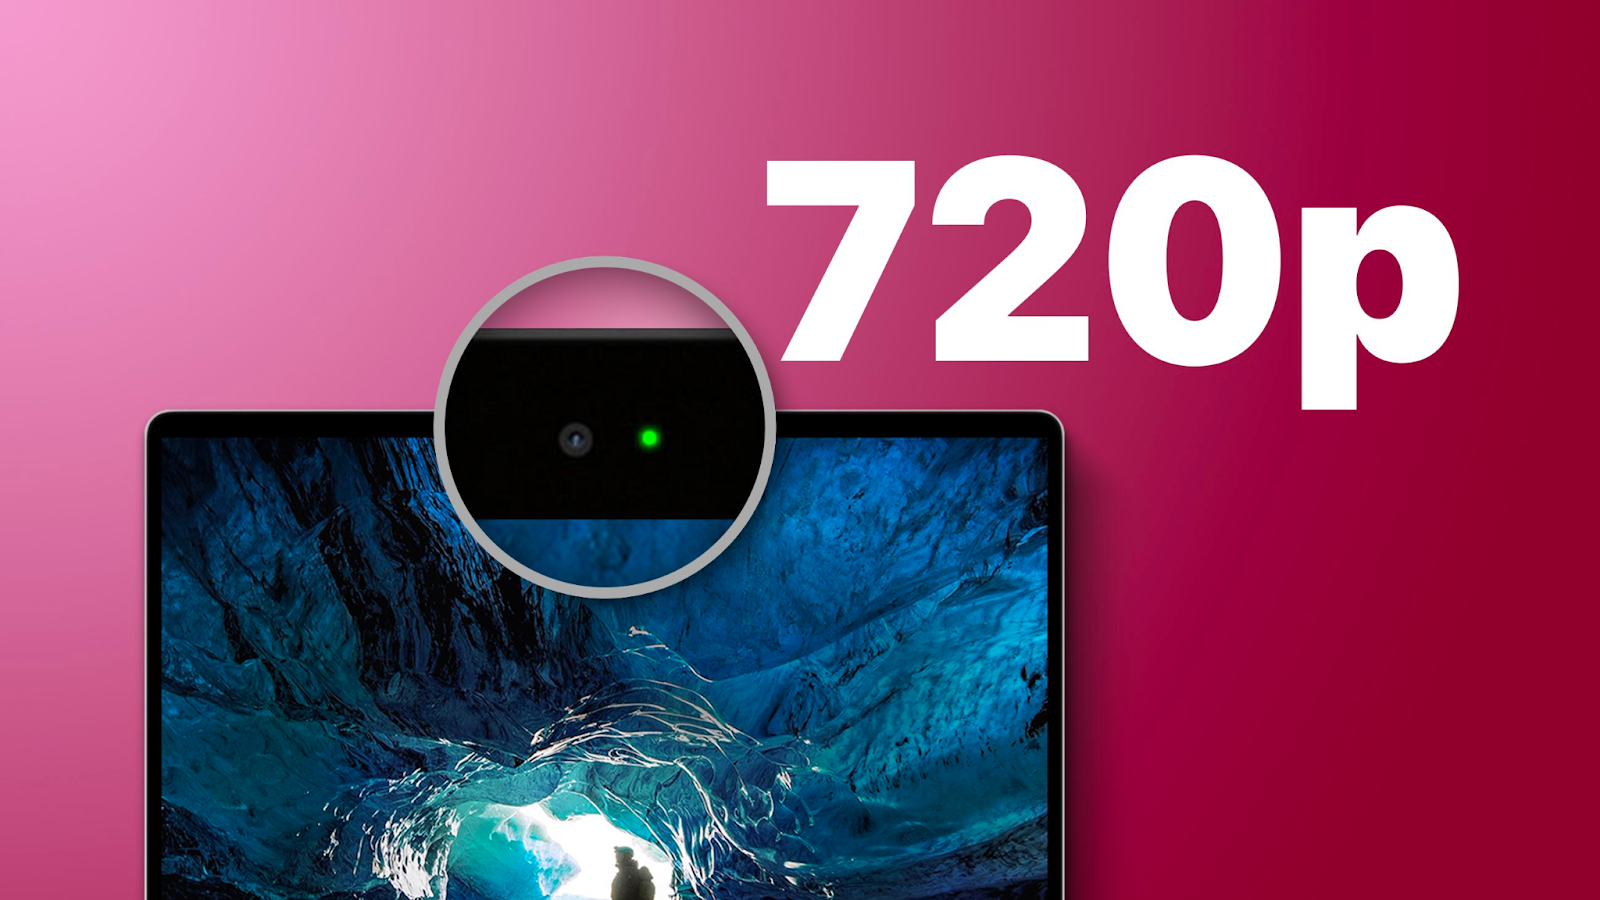 MacBook Pro M1 2020 vẫn sử dụng webcam 720p nhưng đã cải thiện đáng kể chất lượng hình ảnh.